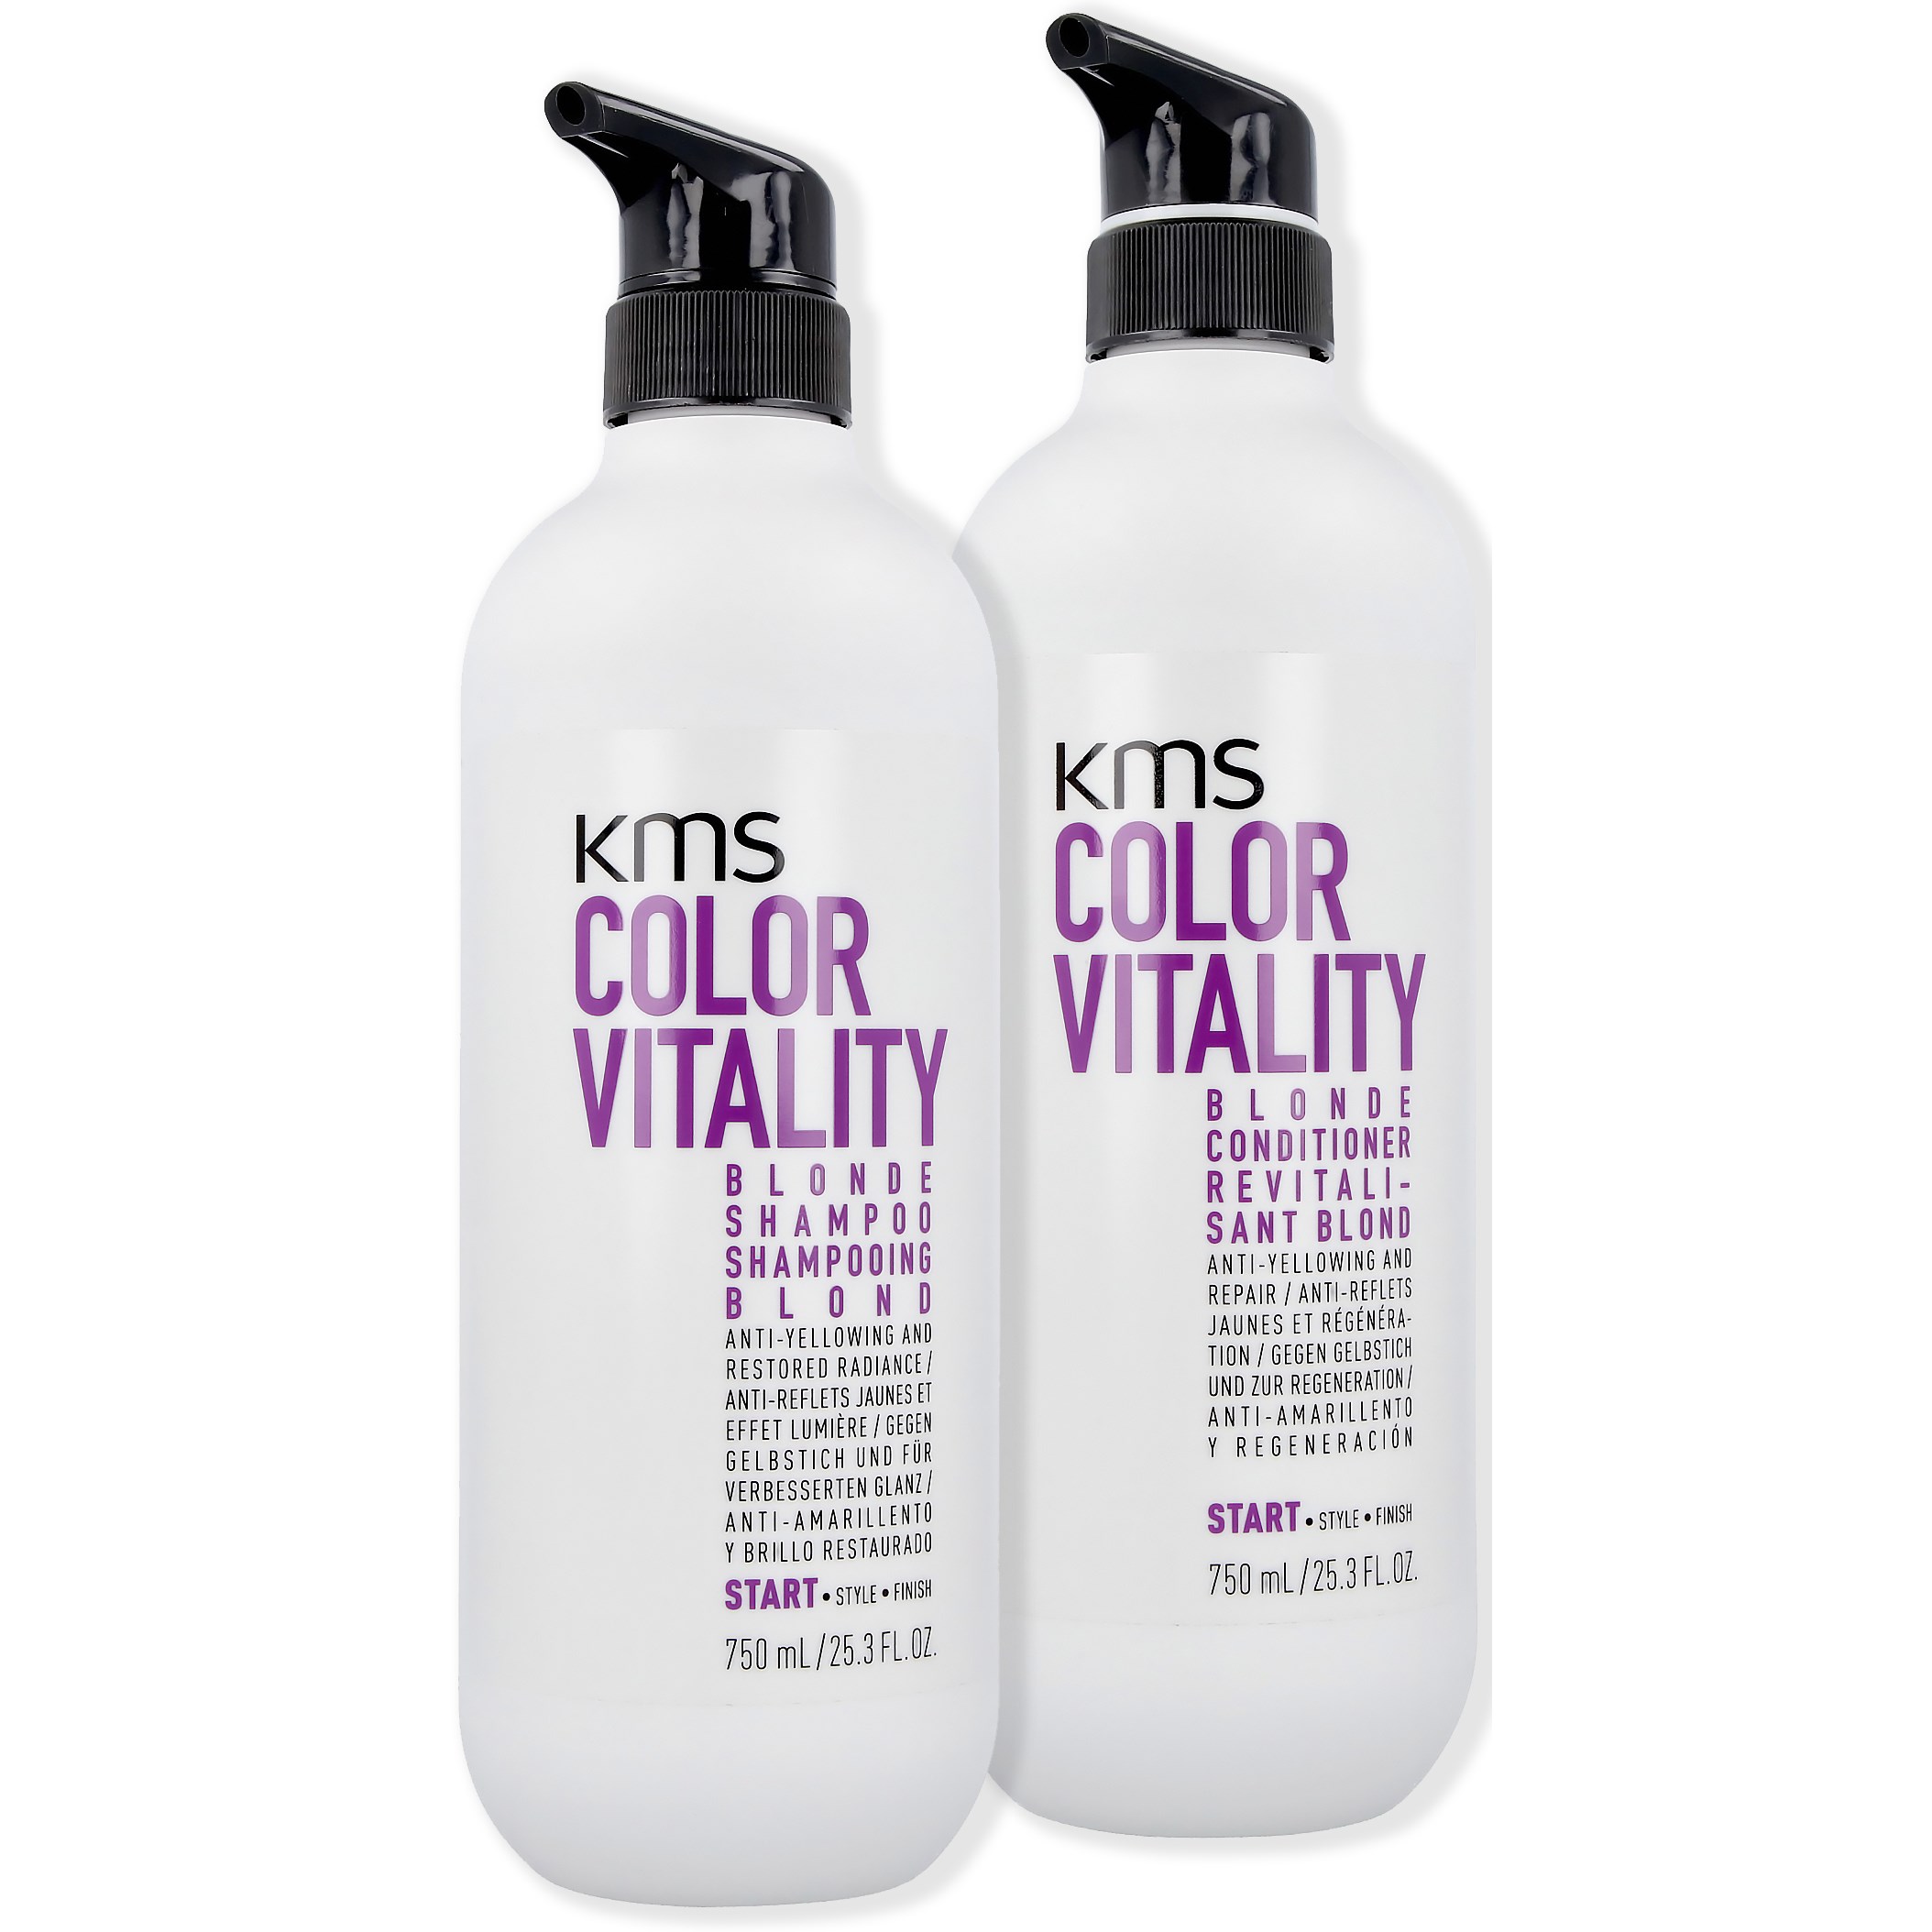 Bilde av Kms Colorvitality Blonde Package